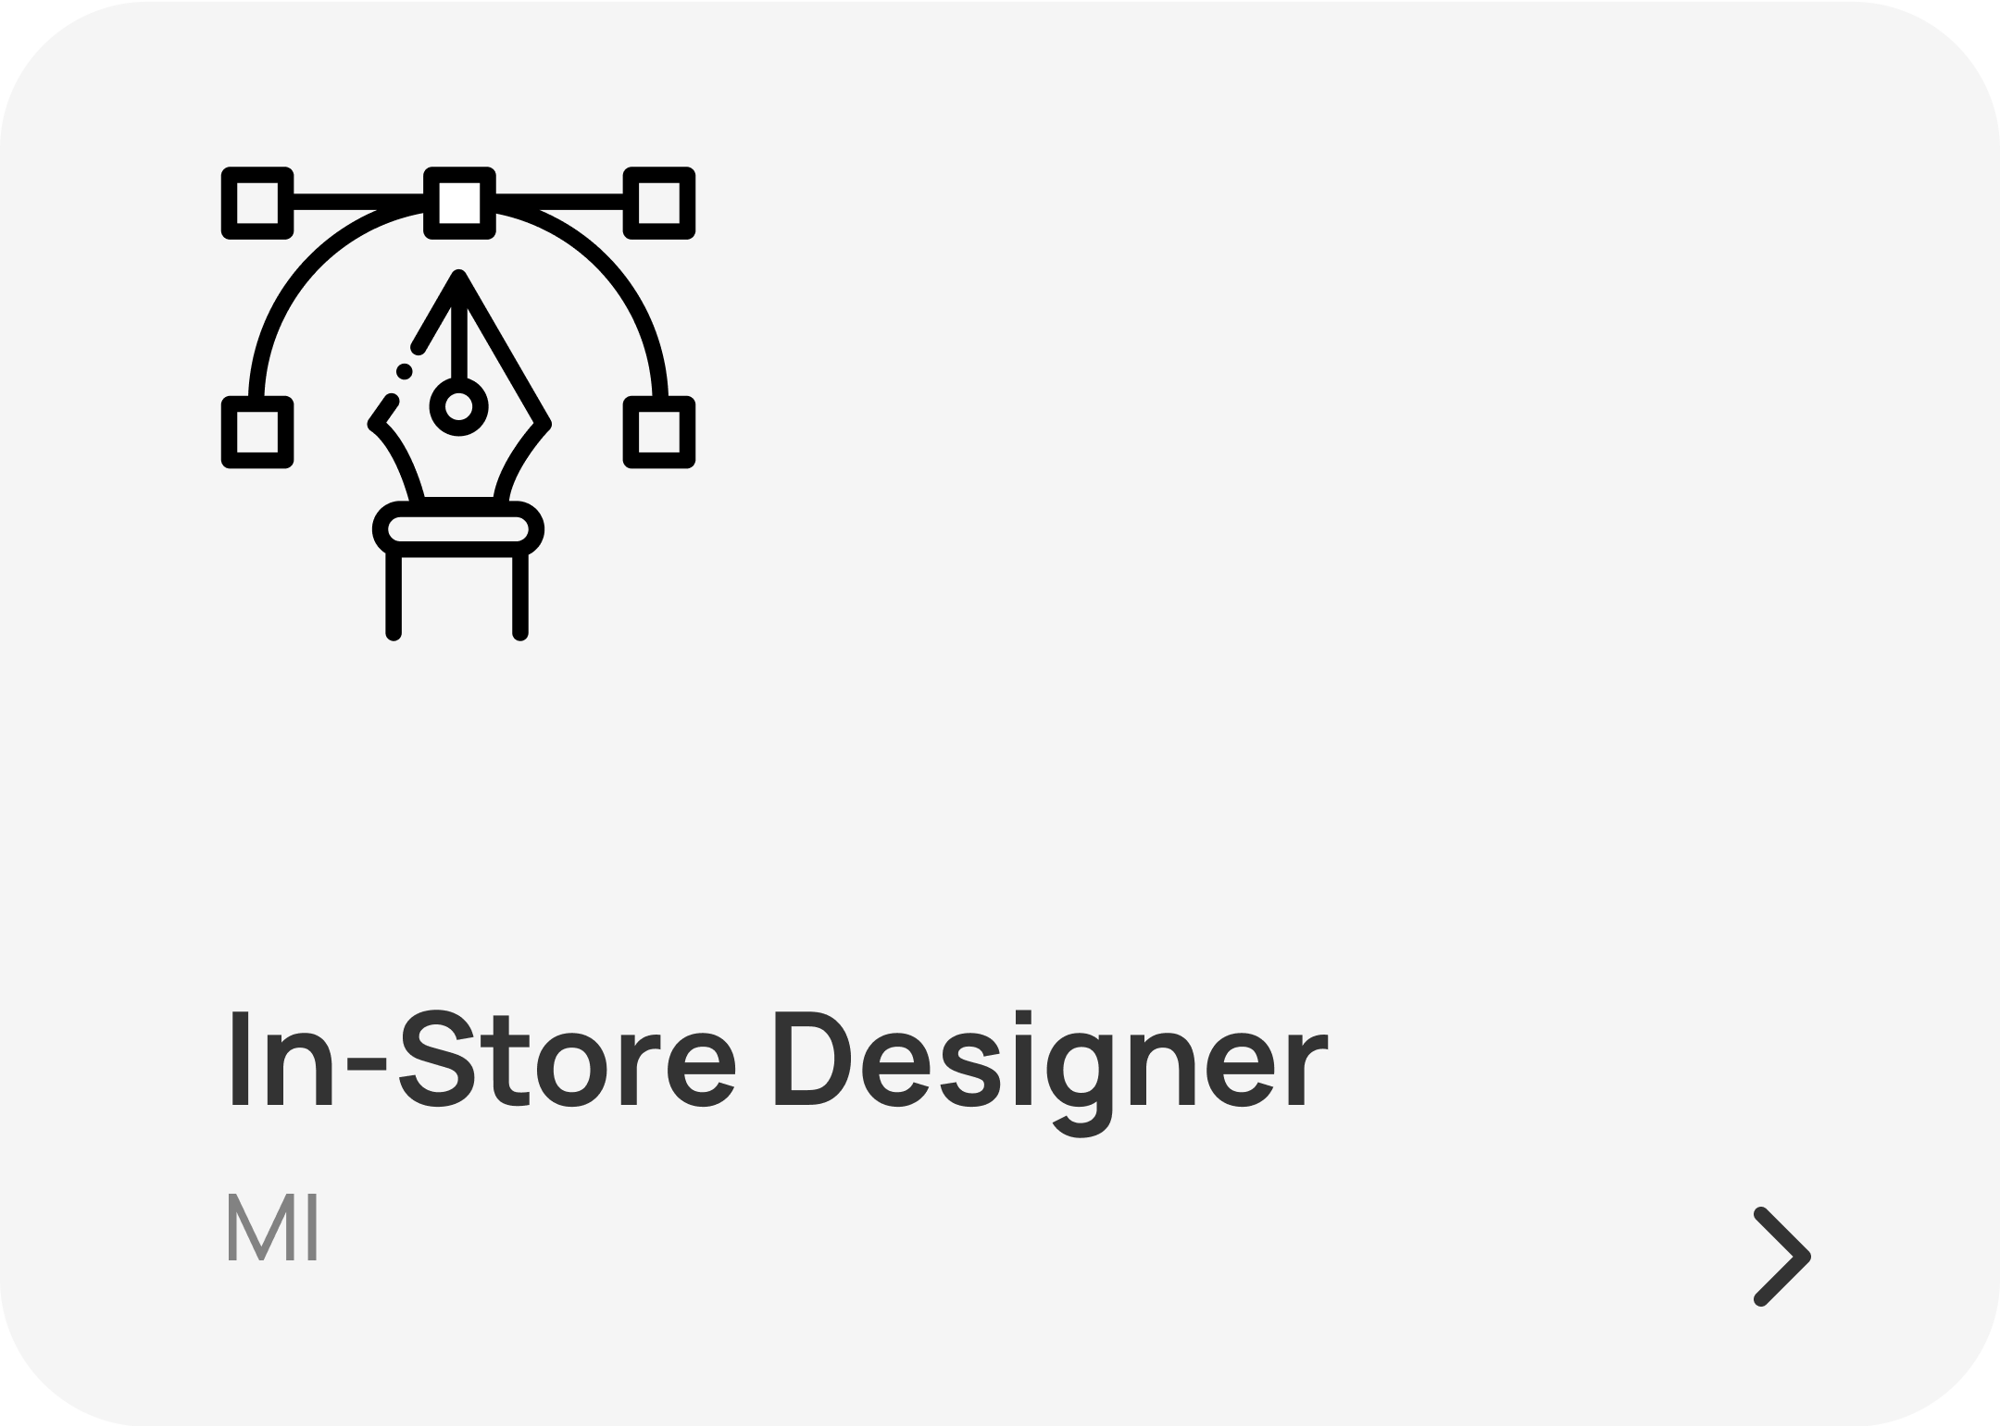 instore designer (1)